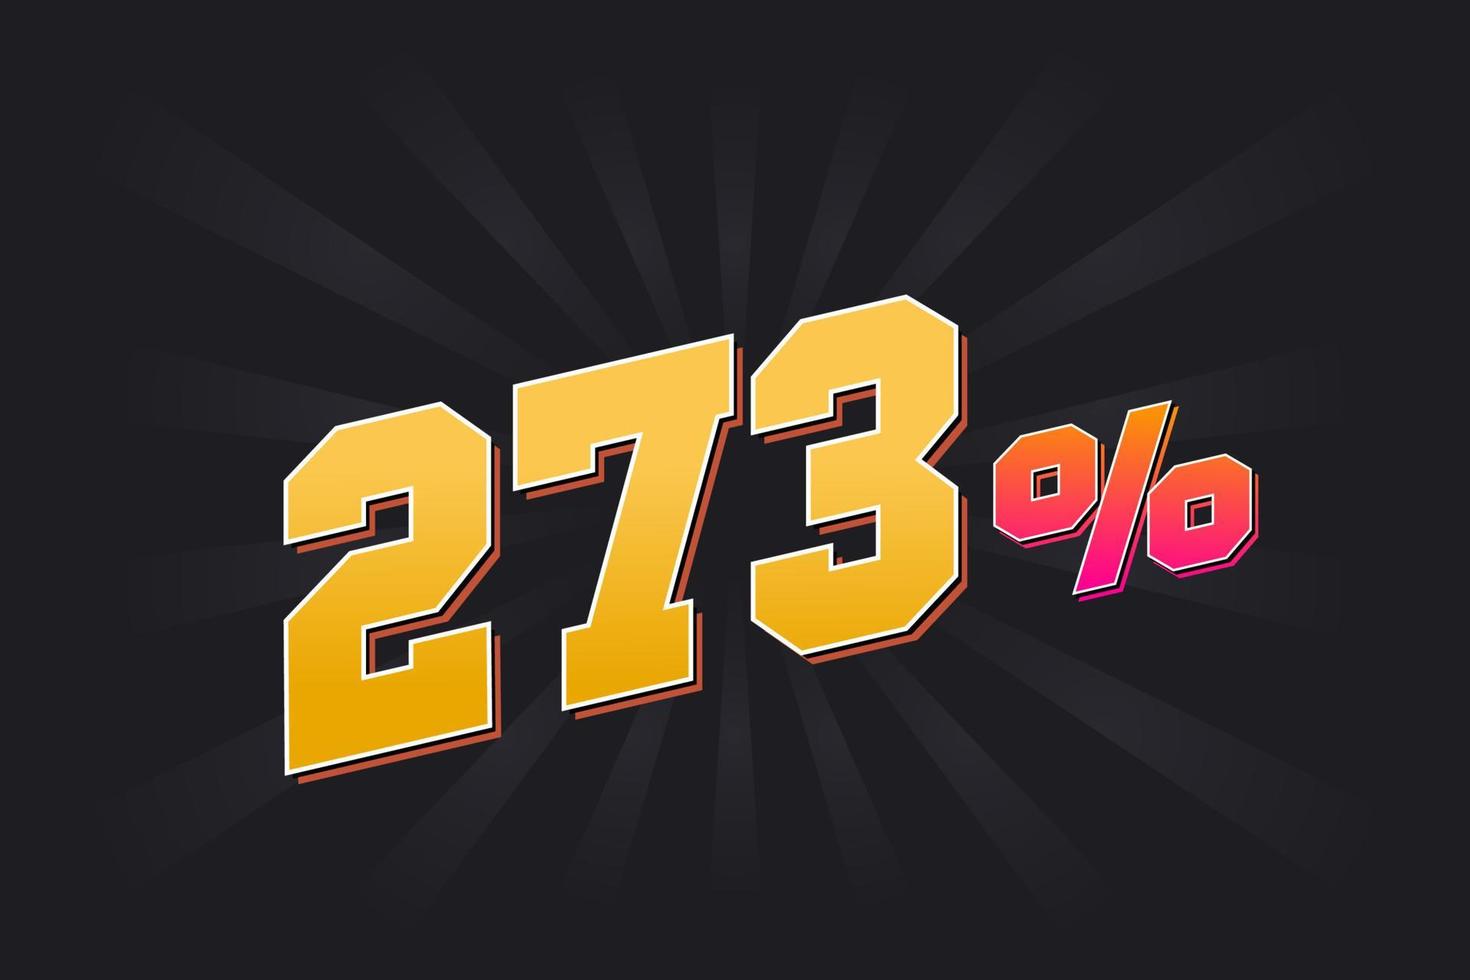 273 banner de descuento con fondo oscuro y texto amarillo. 273 por ciento de diseño promocional de ventas. vector